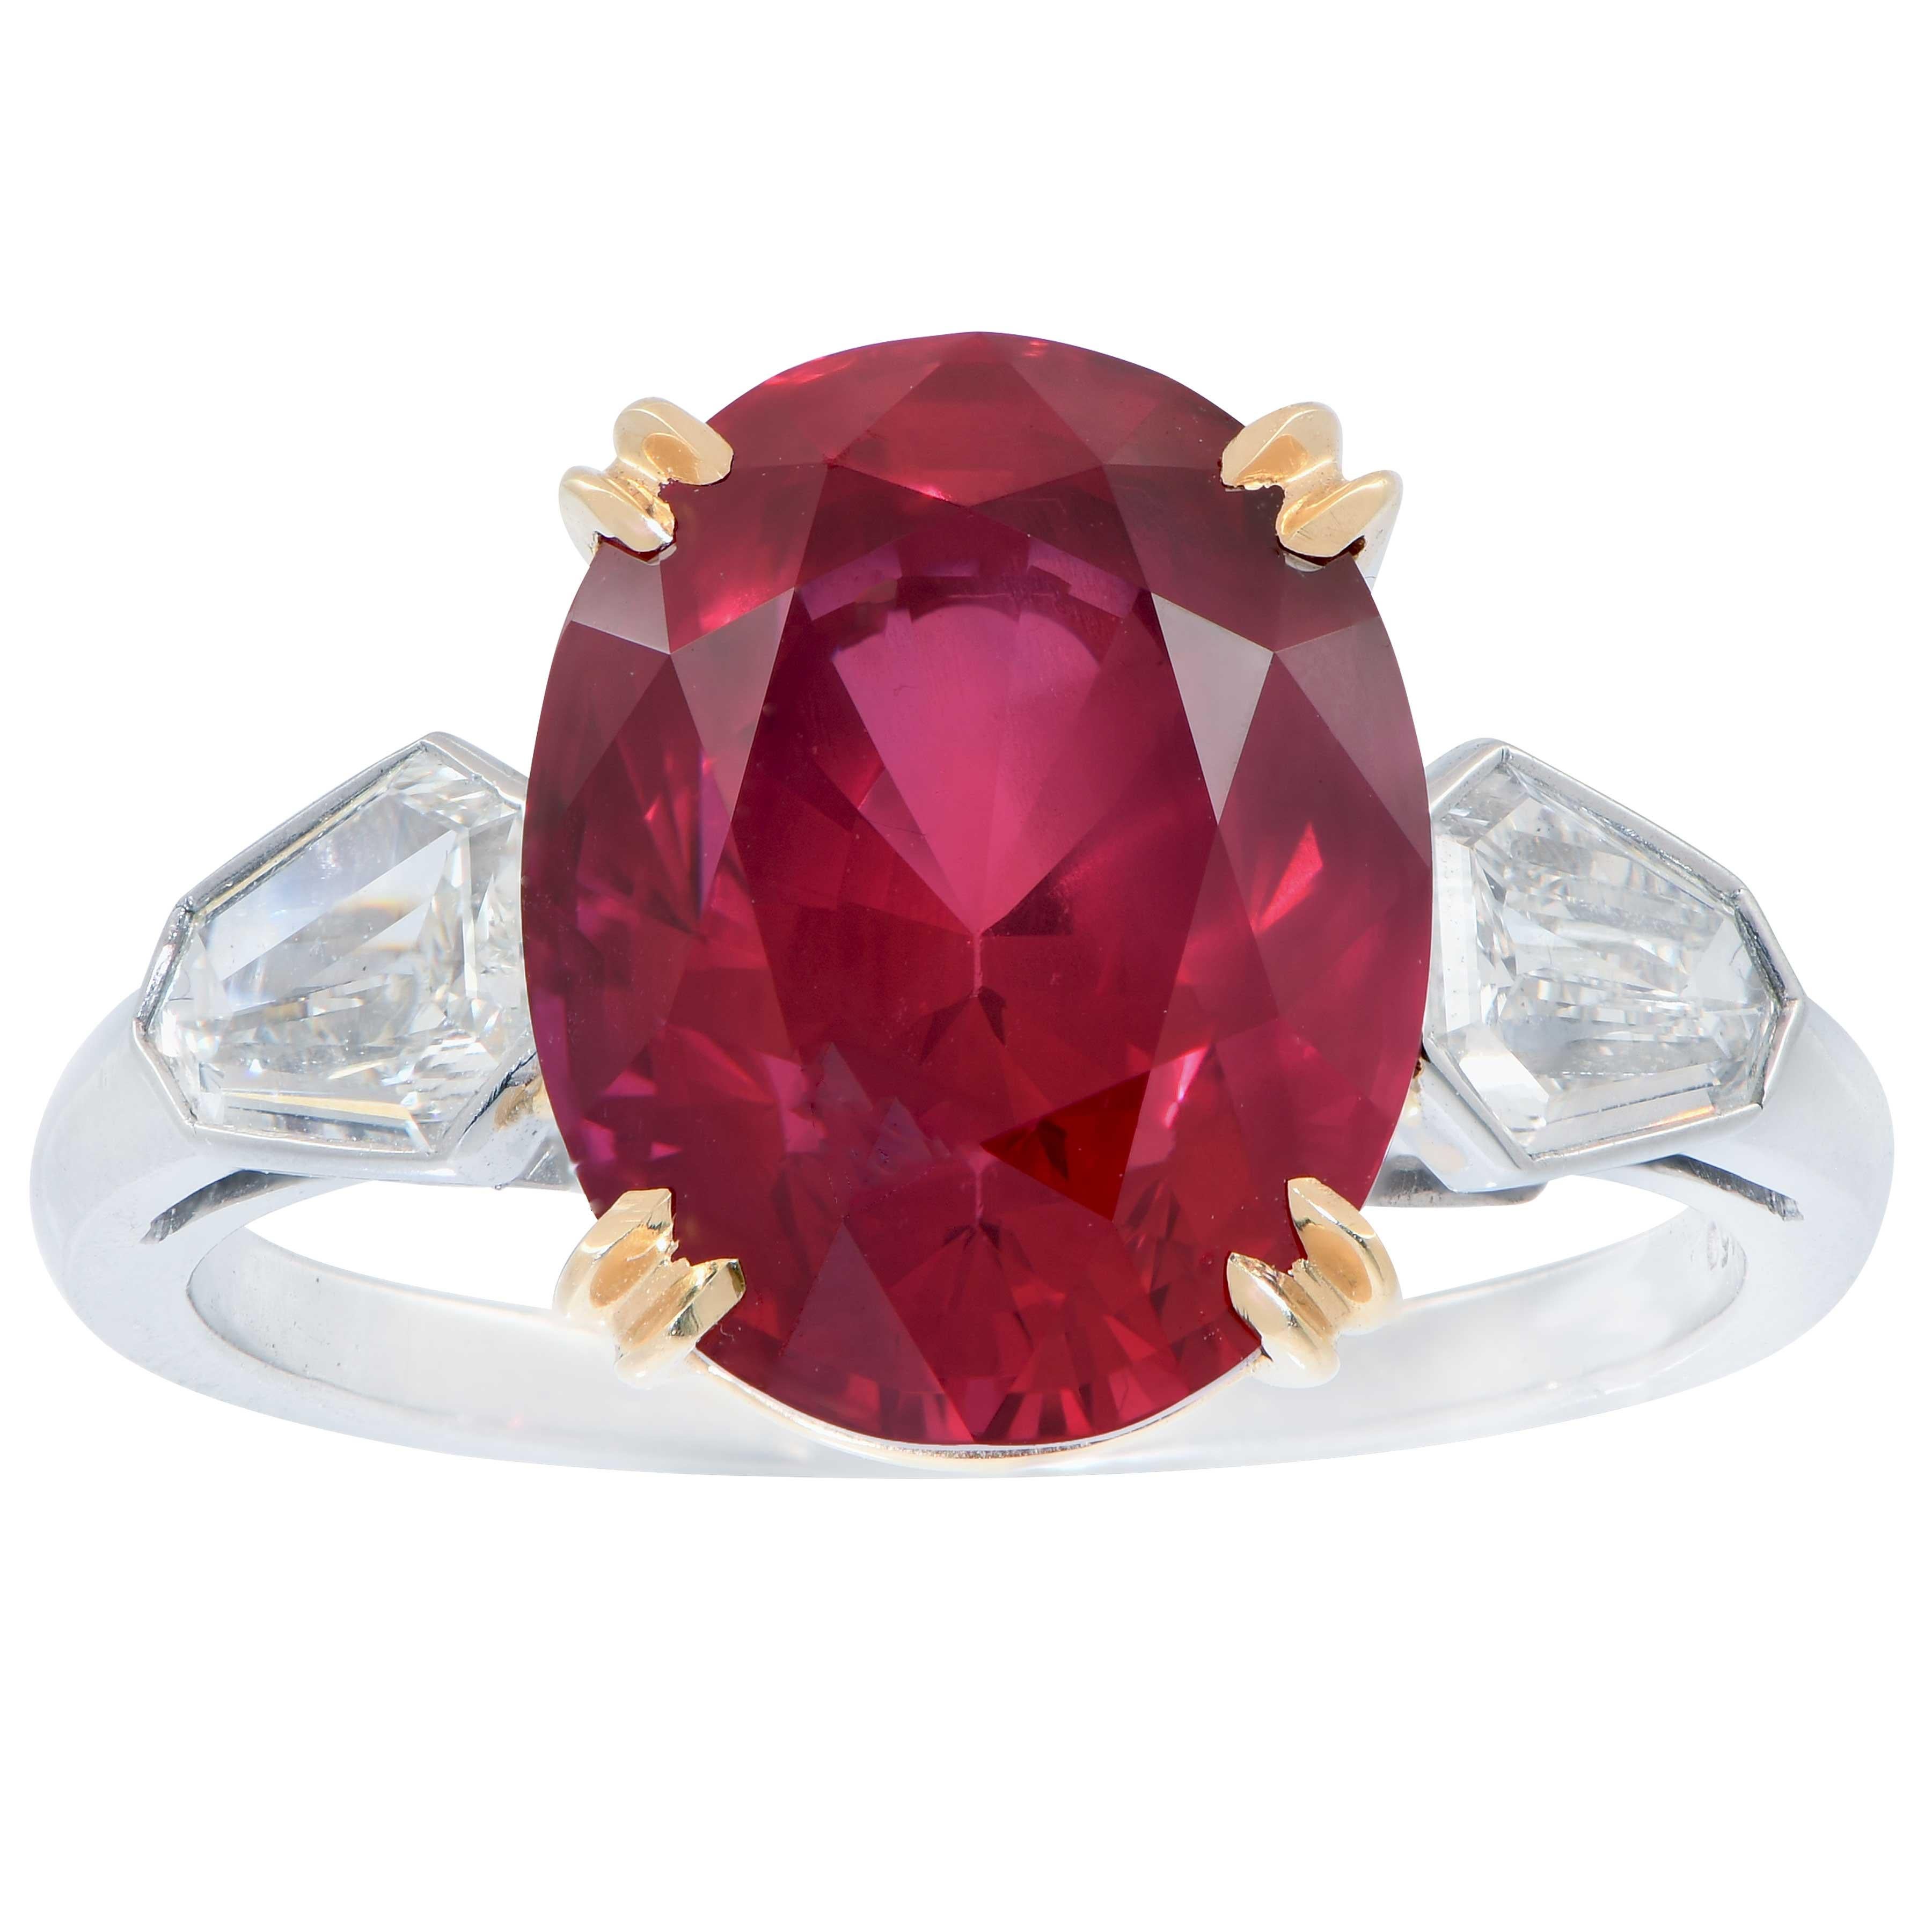 7,47 Karat GRS Graded No Heat Mosambik Oval Cut Rubin und Diamant Ring verfügt über eine exquisite Taubenblut leuchtend roten Rubin mit hervorragenden Kristall und Proportionen. Dieser wunderschöne Rubin ist in einer Platinfassung mit zwei Diamanten